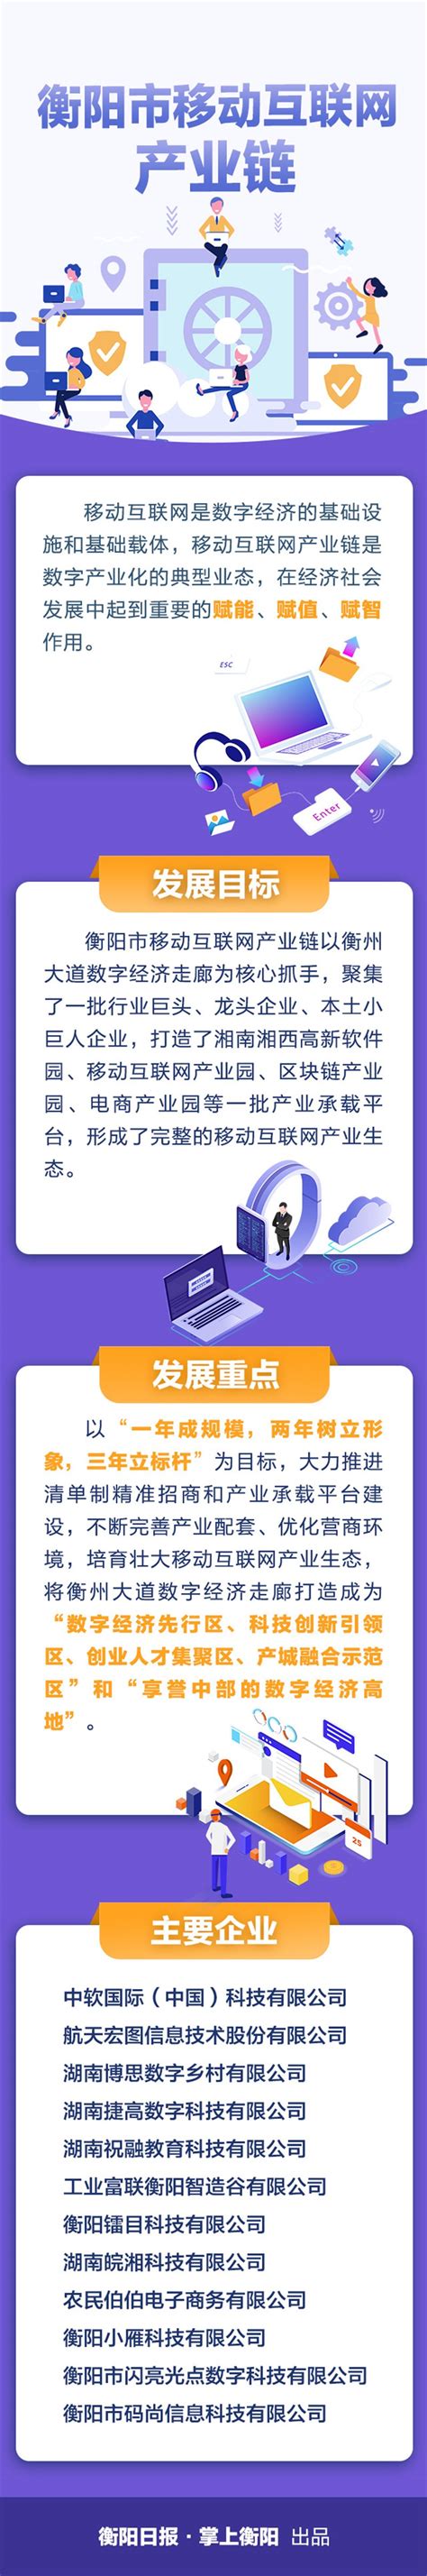 湖南省统一互动交流平台-衡阳市人民政府门户网站